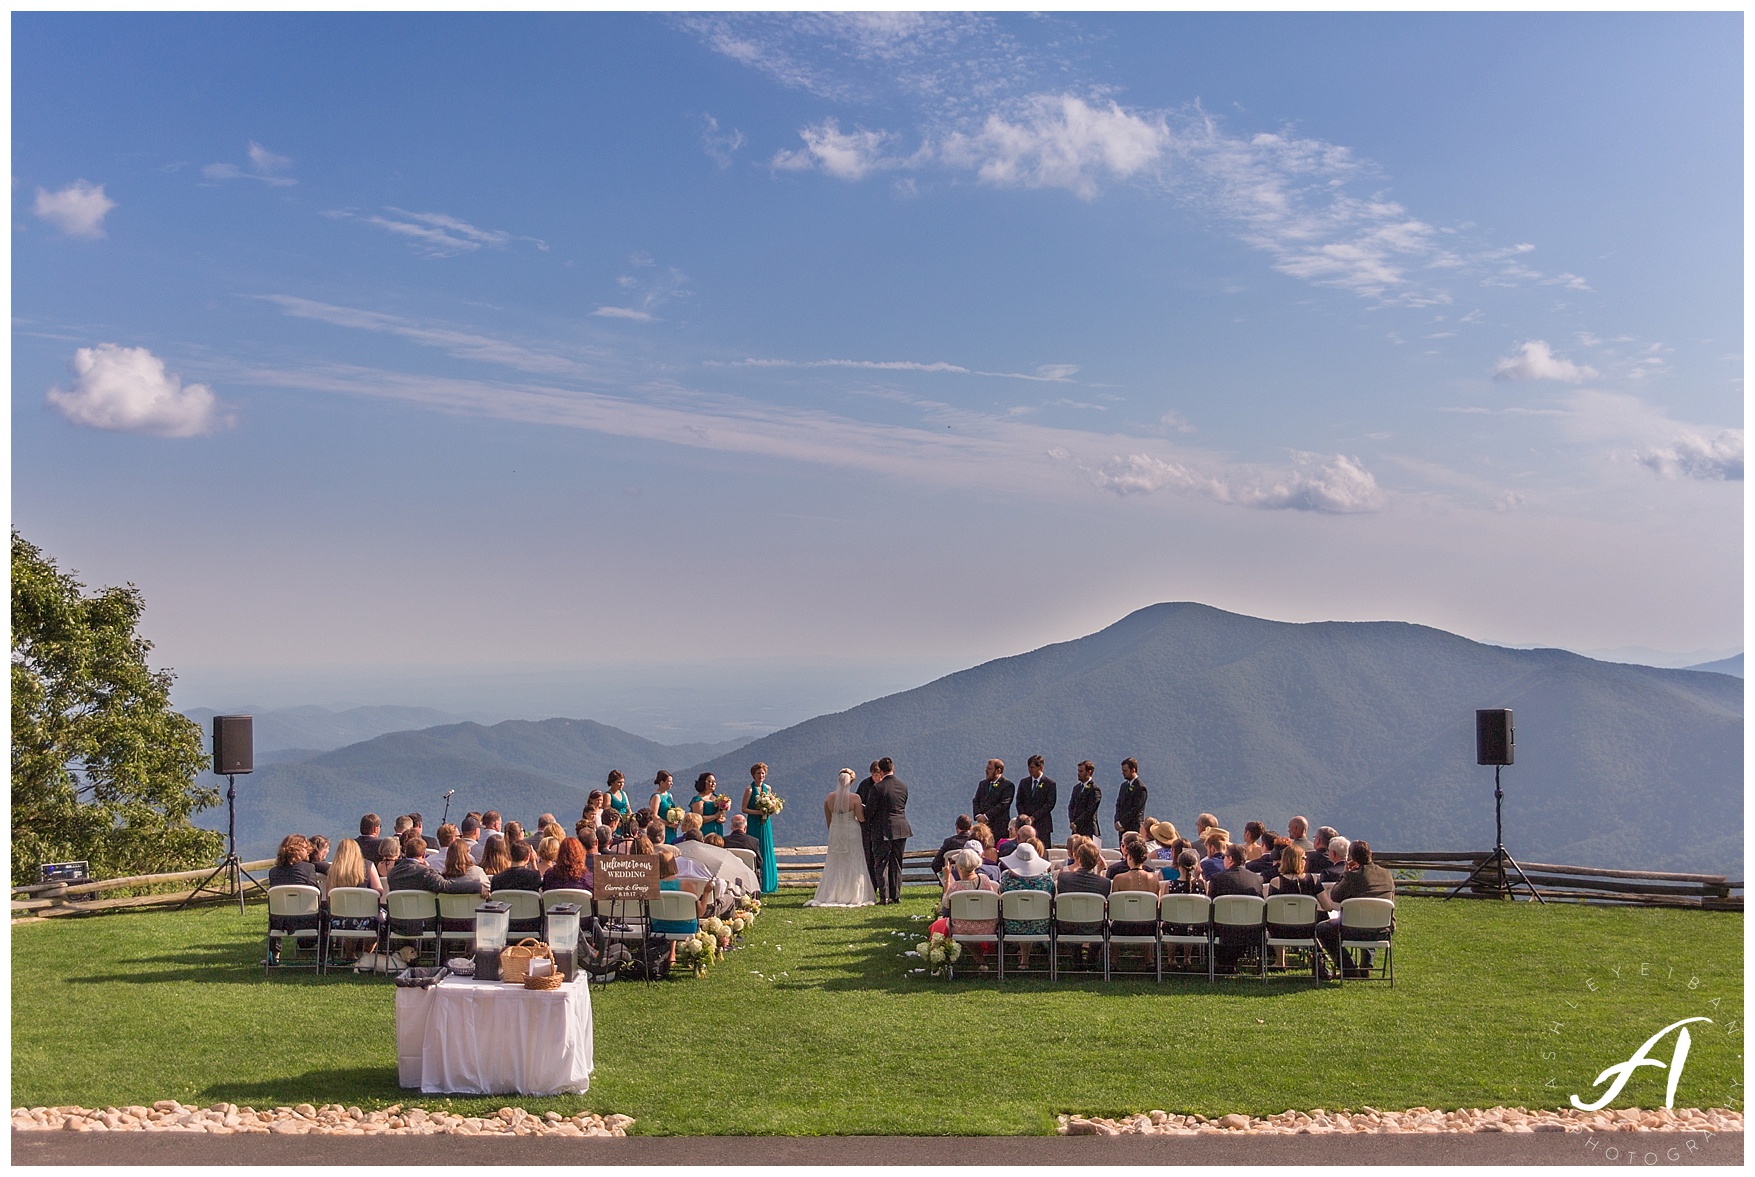 Mountain View Wedding || Central Virginia, Wintergreen Resort Wedding || Ashley Eiban Photography || www.ashleyeiban.com